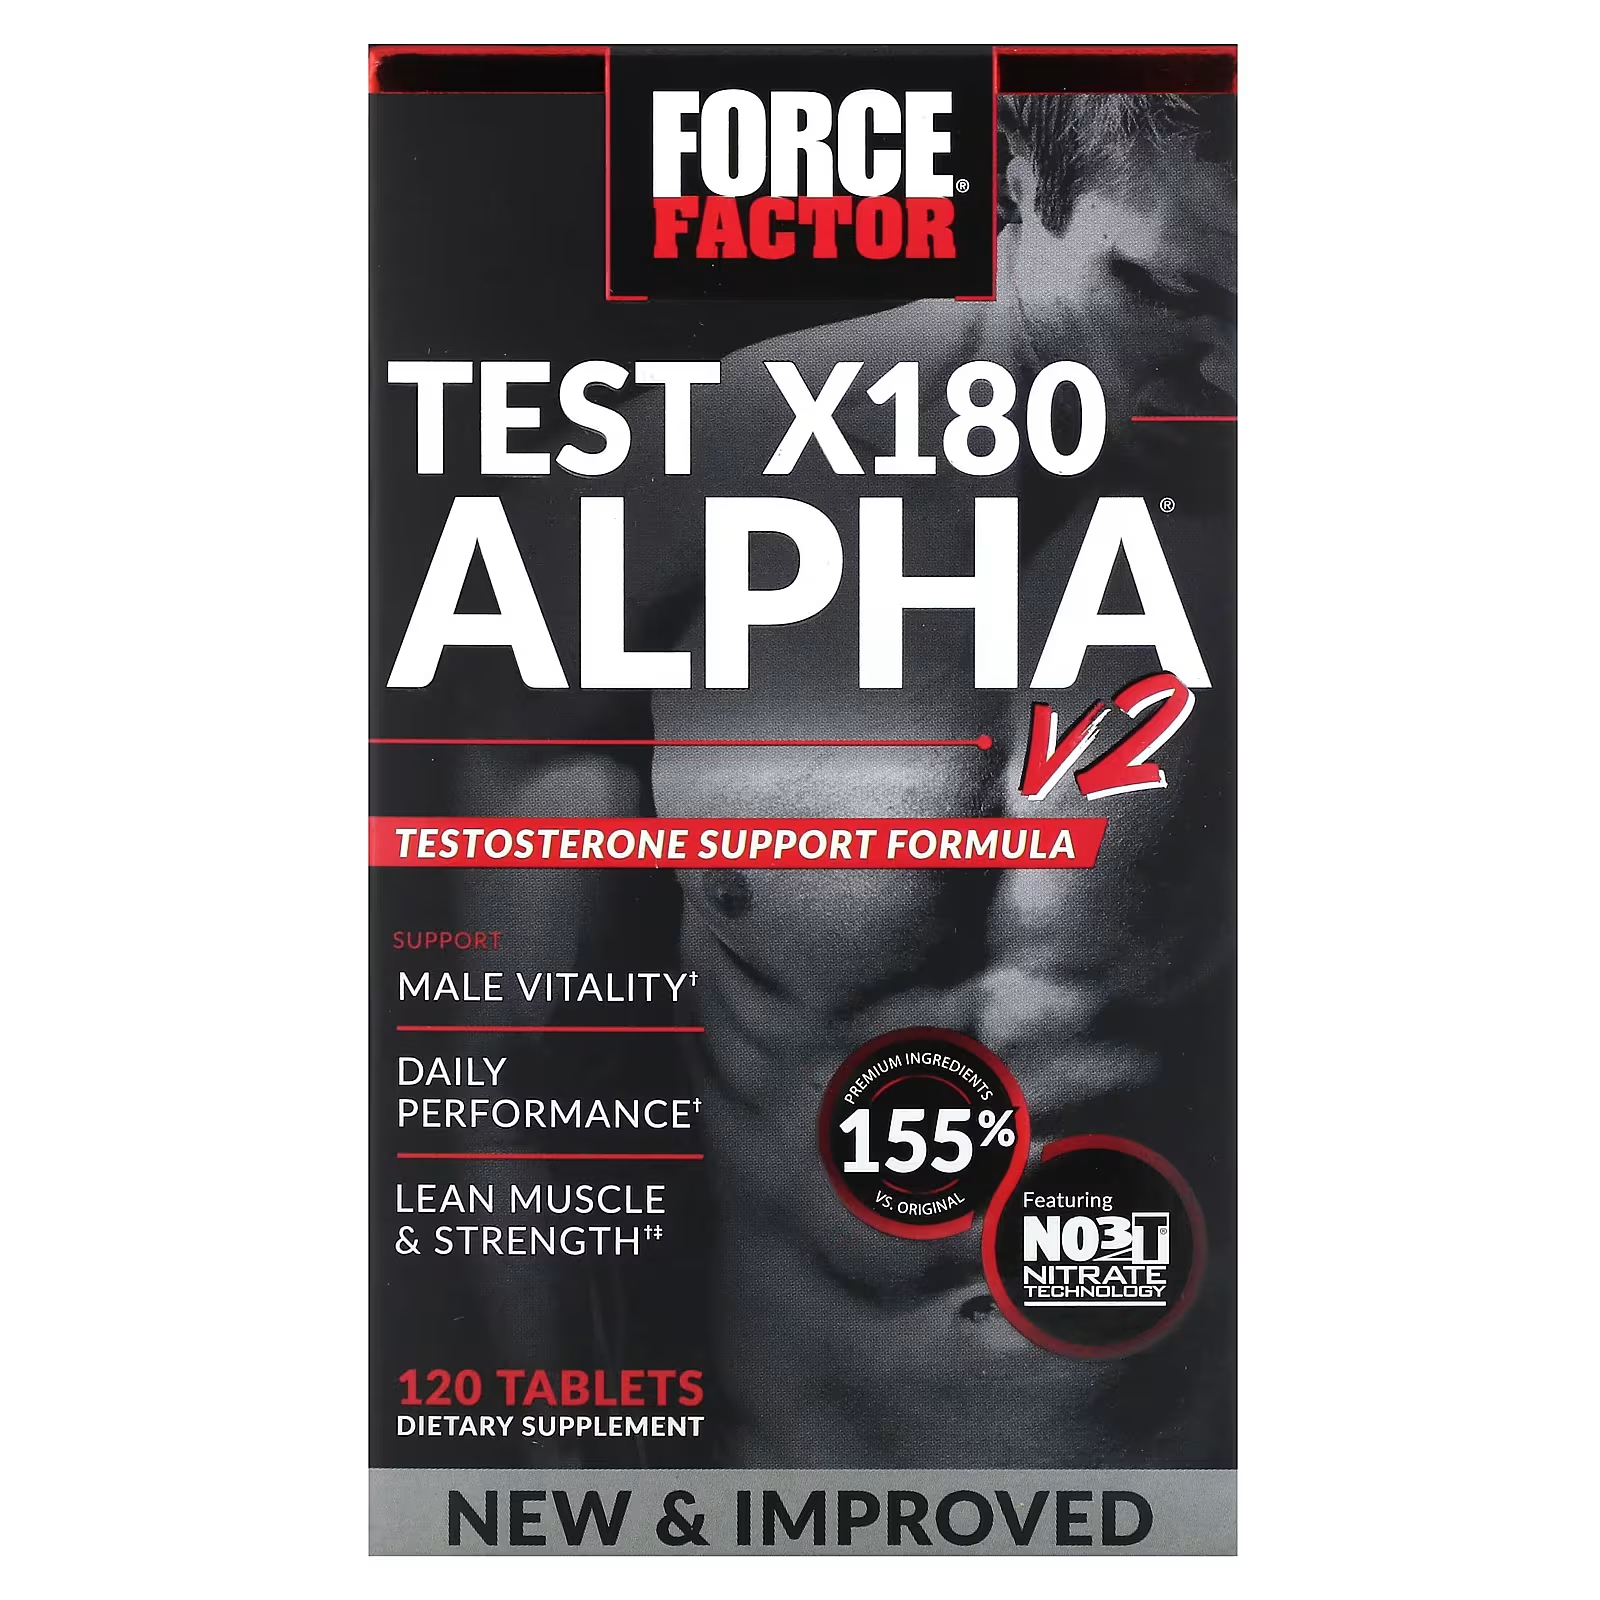 Тест на фактор силы X180 Alpha V2, 120 таблеток Force Factor force factor test x180 alpha v2 120 таблеток